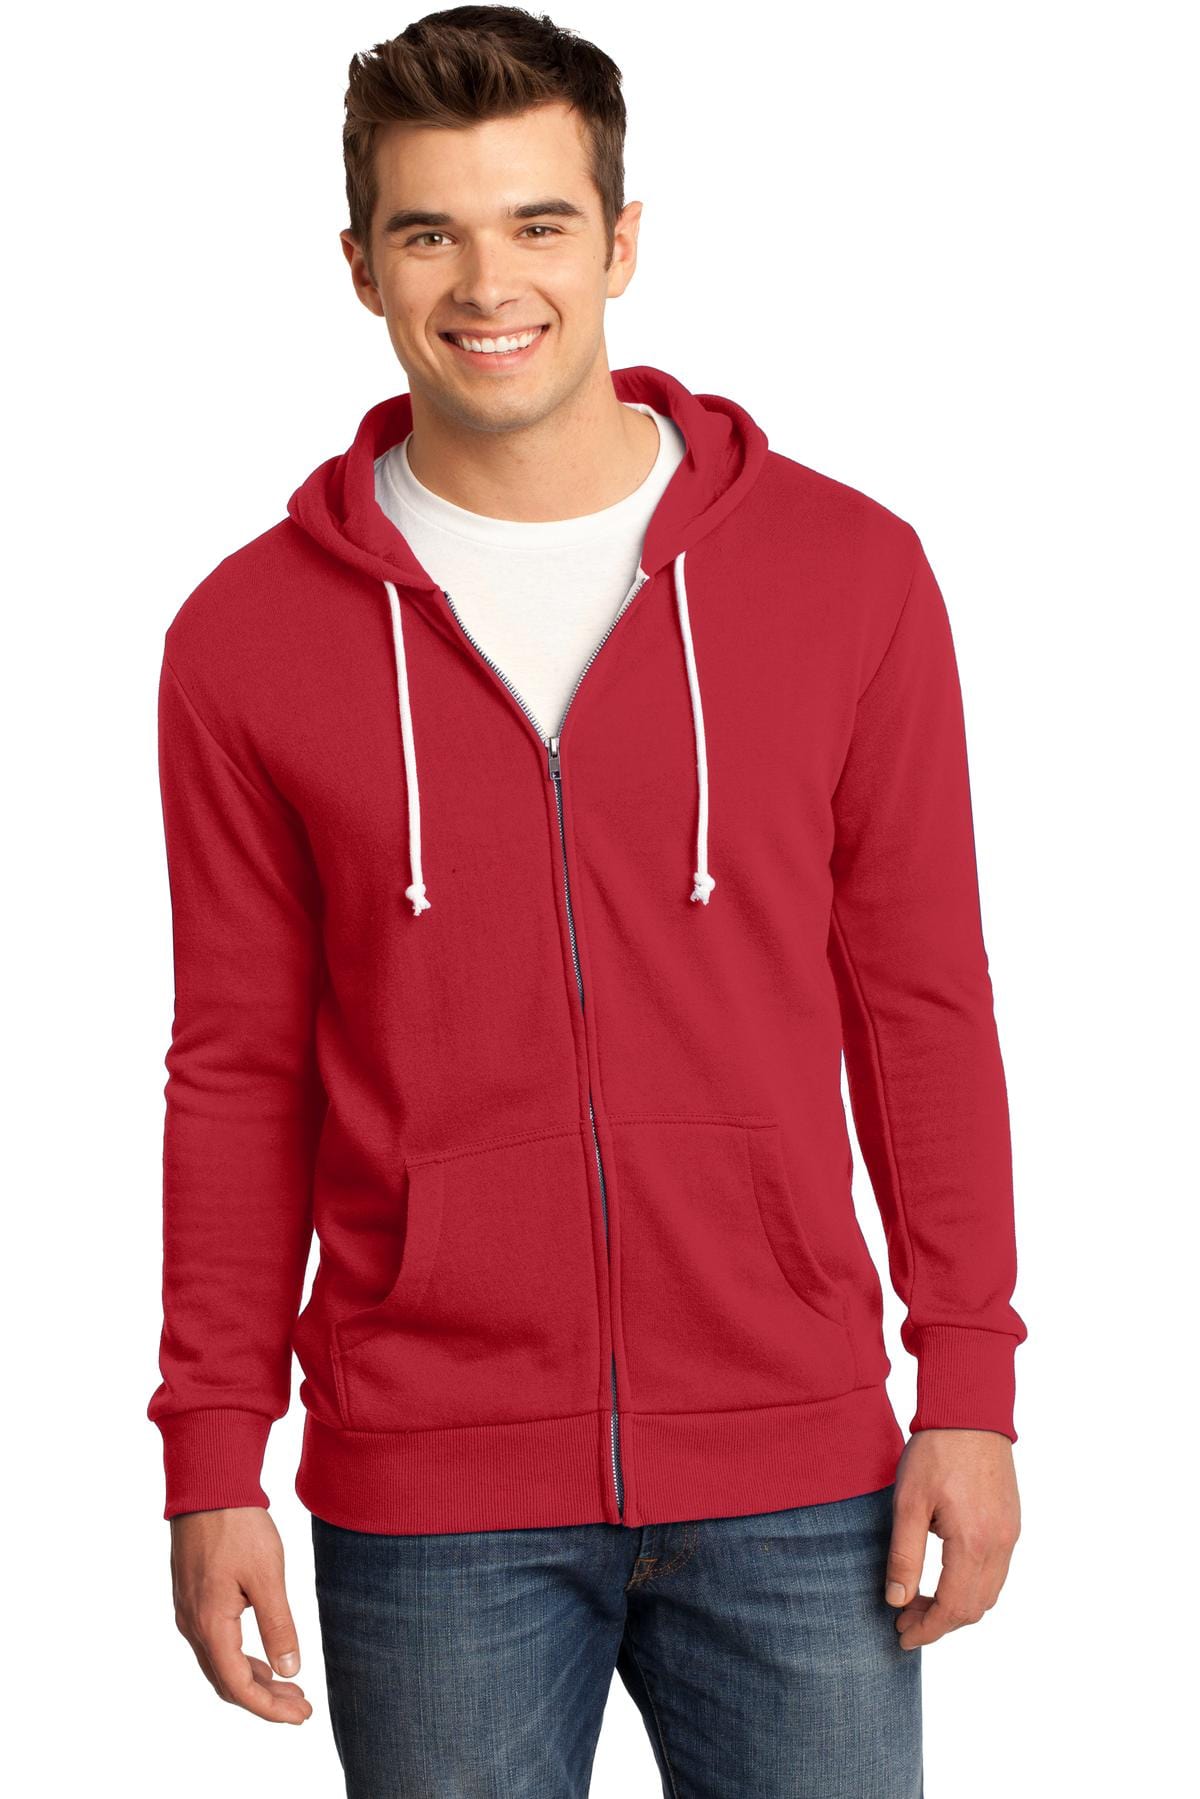 District Sweatshirts/Fleece 4XL / New Red DISCONTINUED  District ®  - Young Mens Core Fleece Full-Zip Hoodie DT190